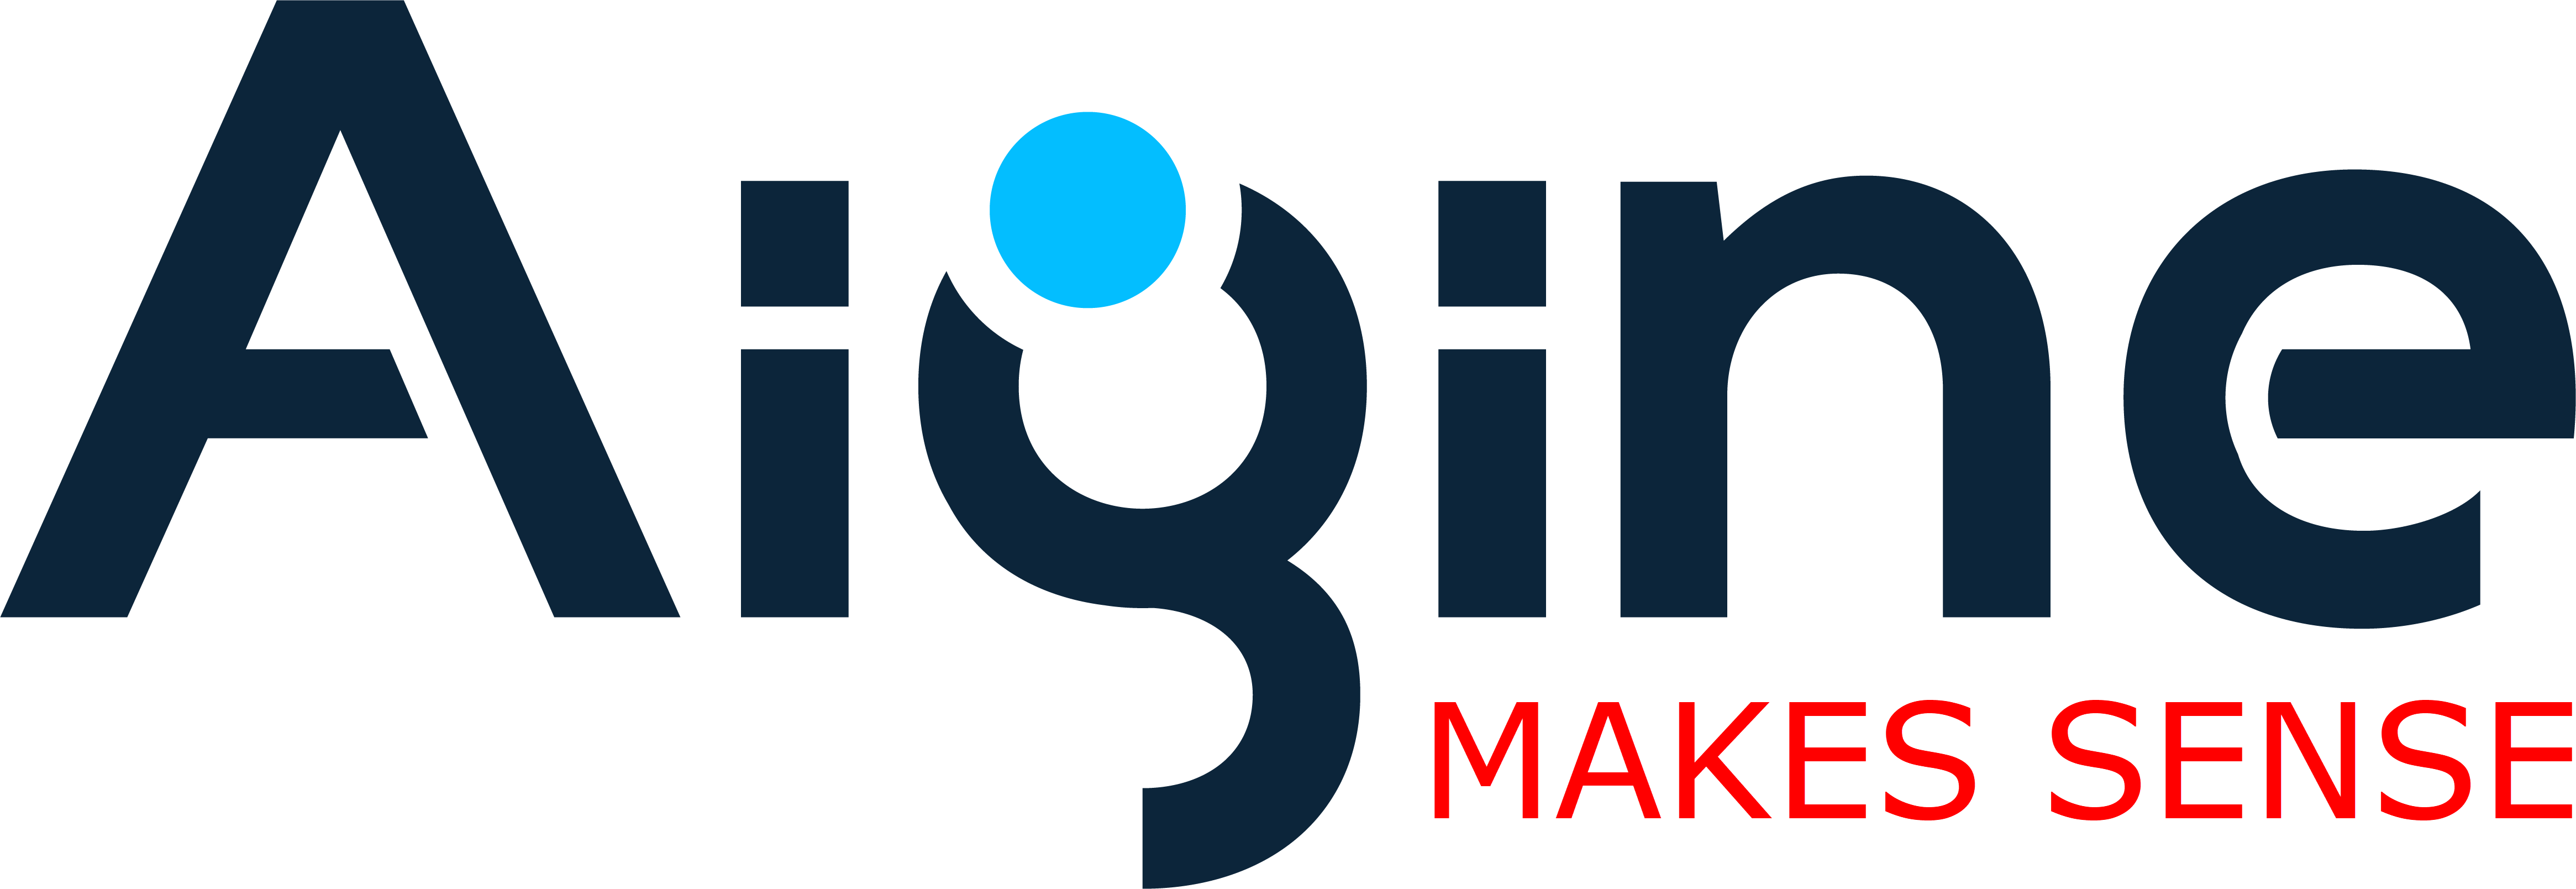 Aigine logo